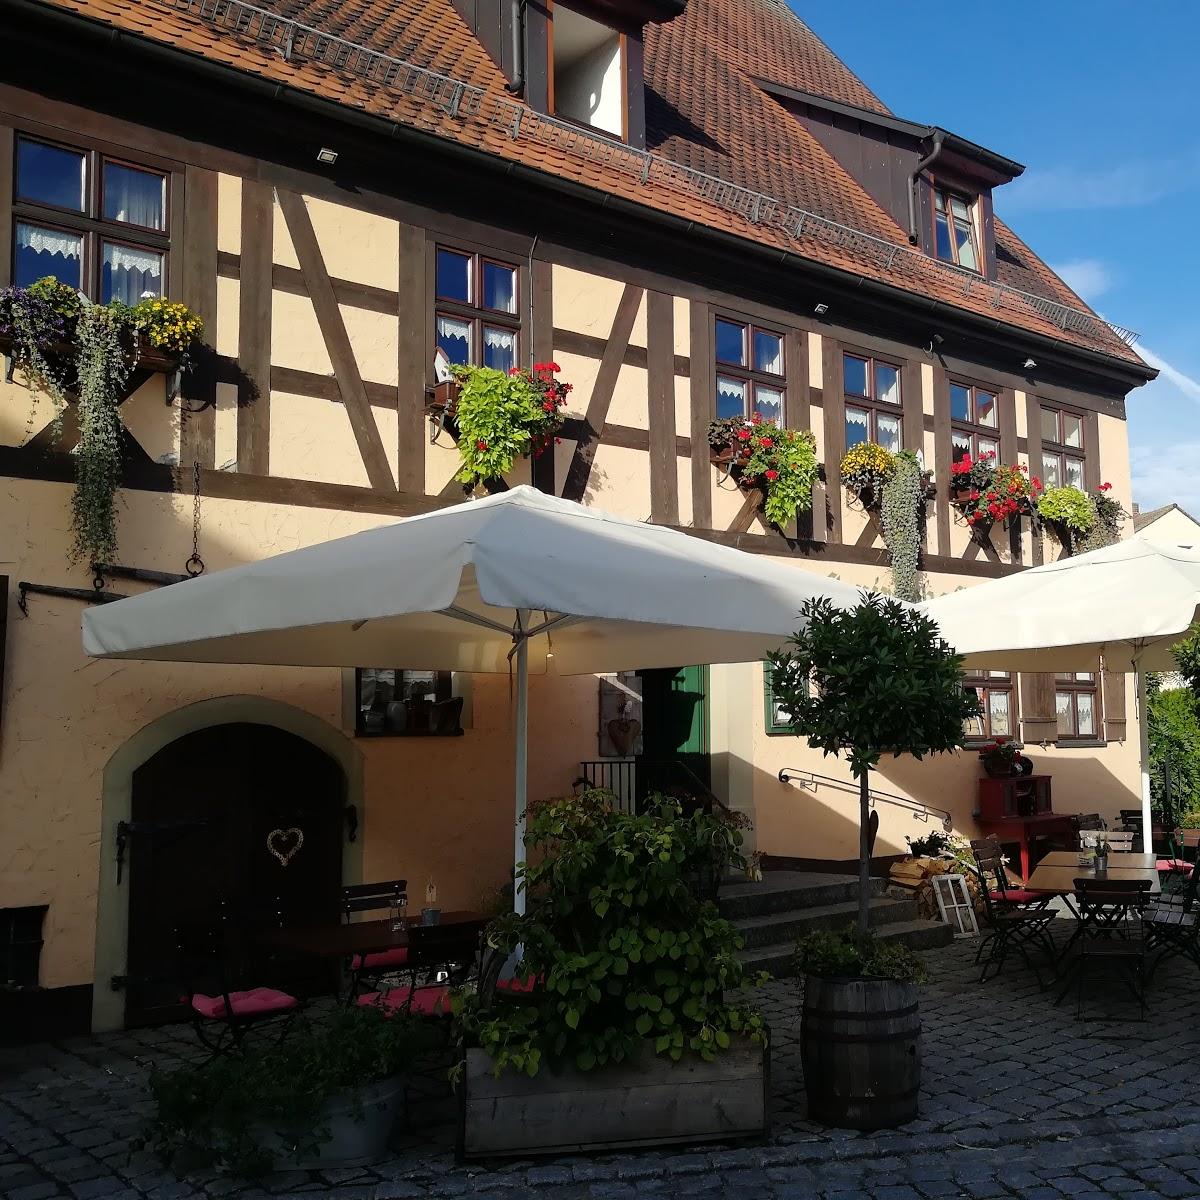 Restaurant "Gasthaus Dollinger" in  Dinkelsbühl